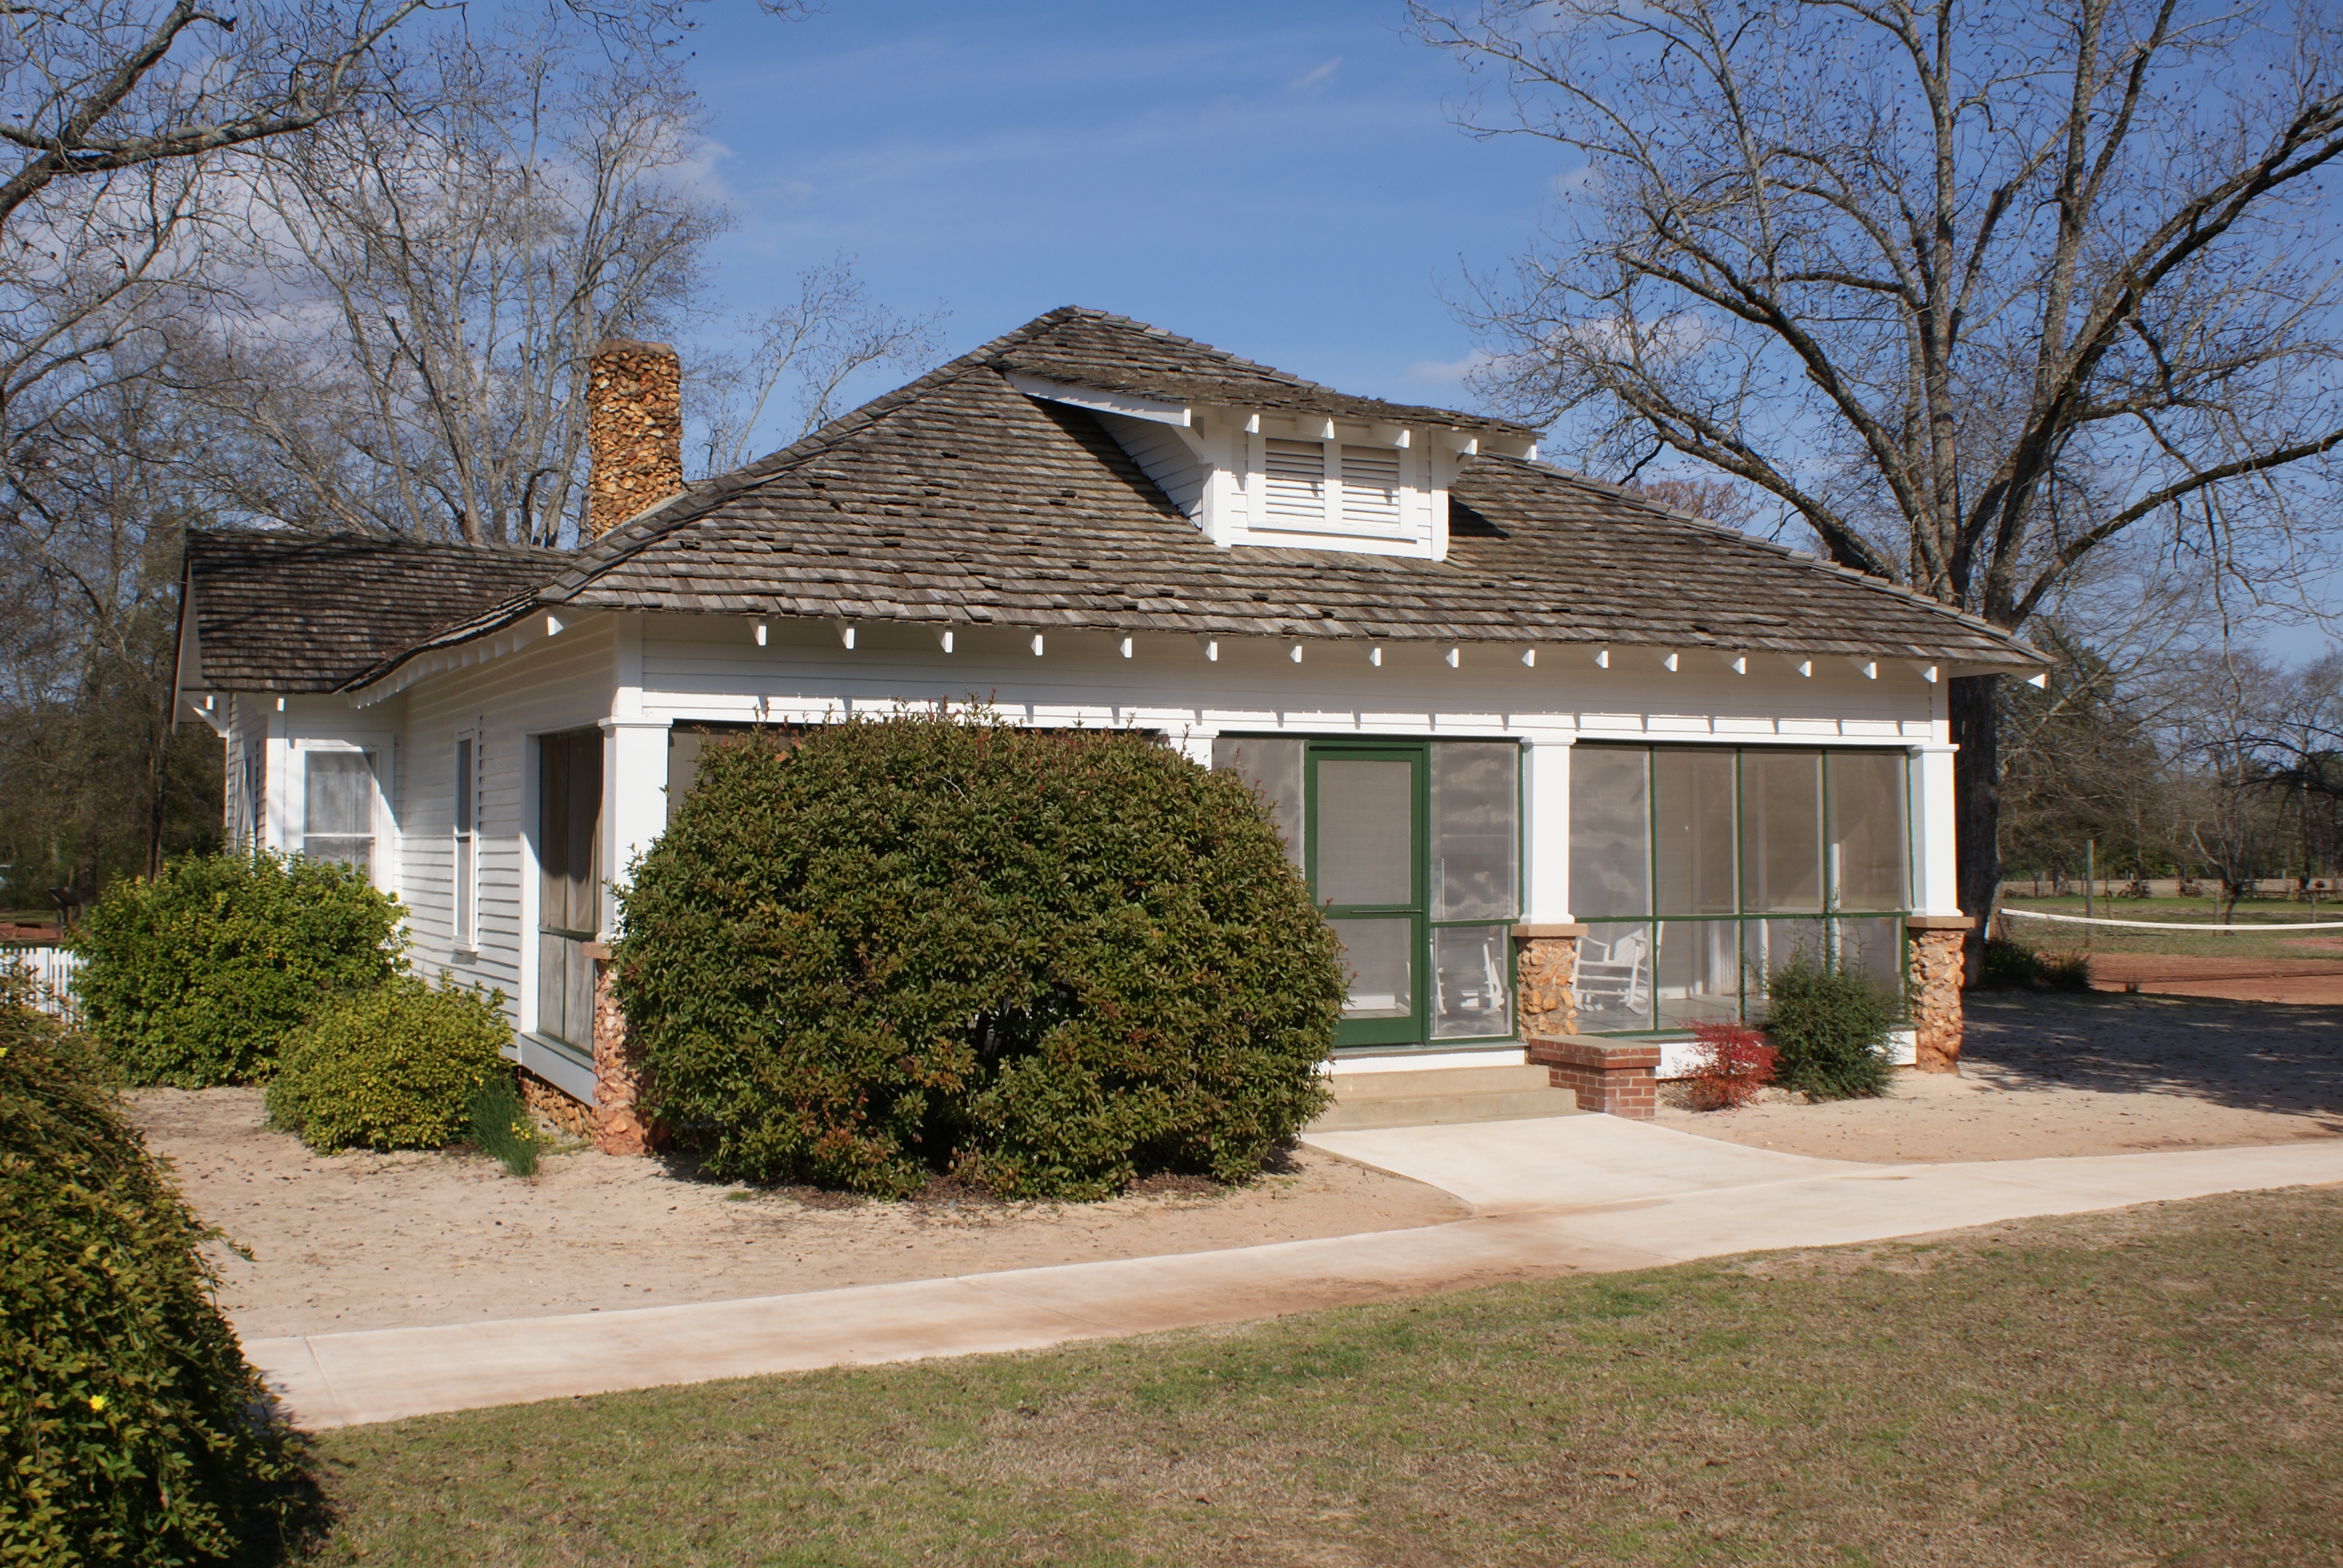 The farmhouse on Jimmy Carter's Boyhood Home